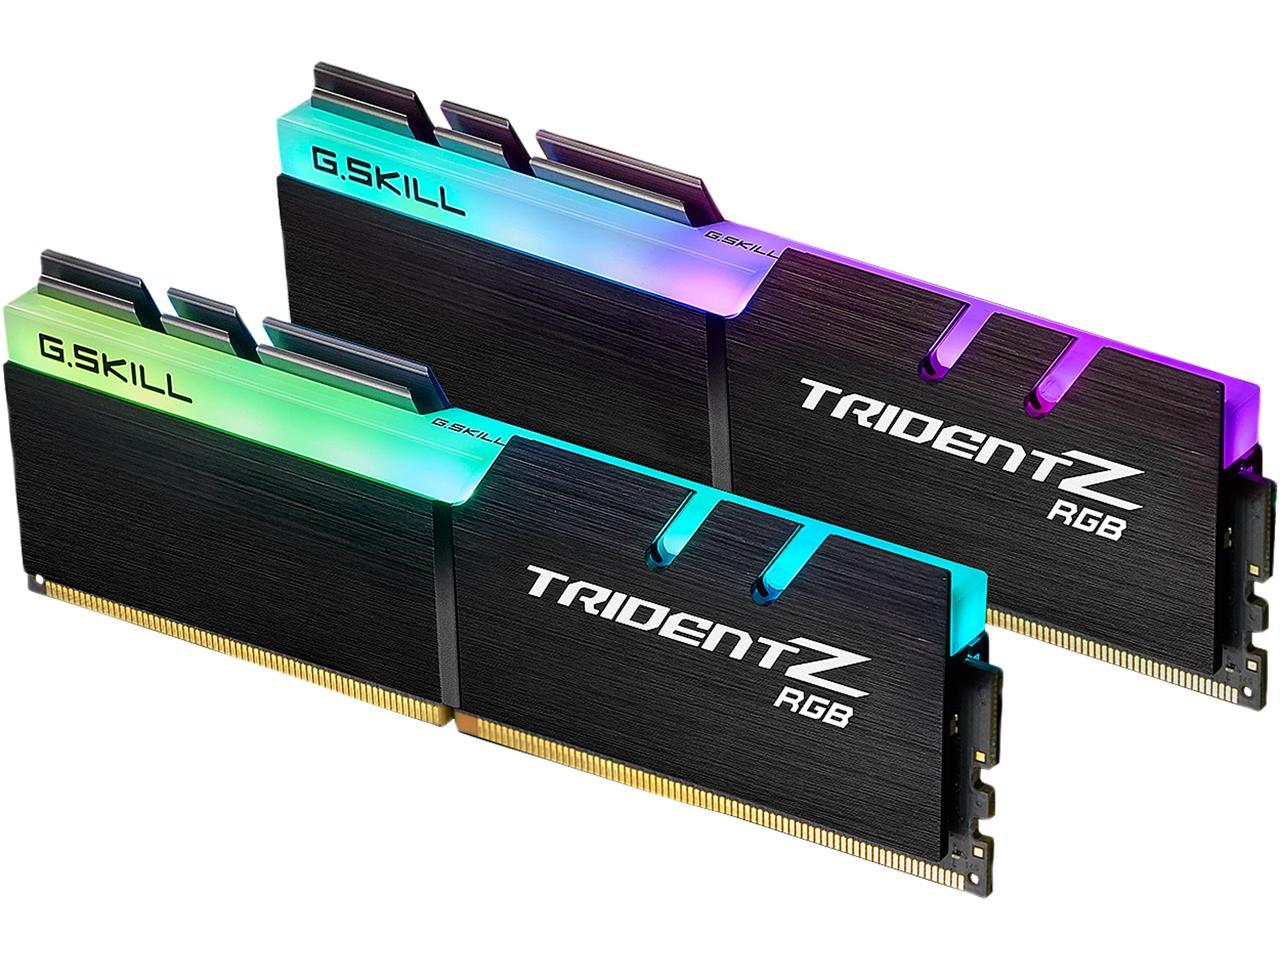 64GB (2x32GB) G.SKILL TridentZ RGB DDR4 3600 (PC4 28800) Memory (CL18) + Bonus 64GB MicroSDXC $160 + Free shipping